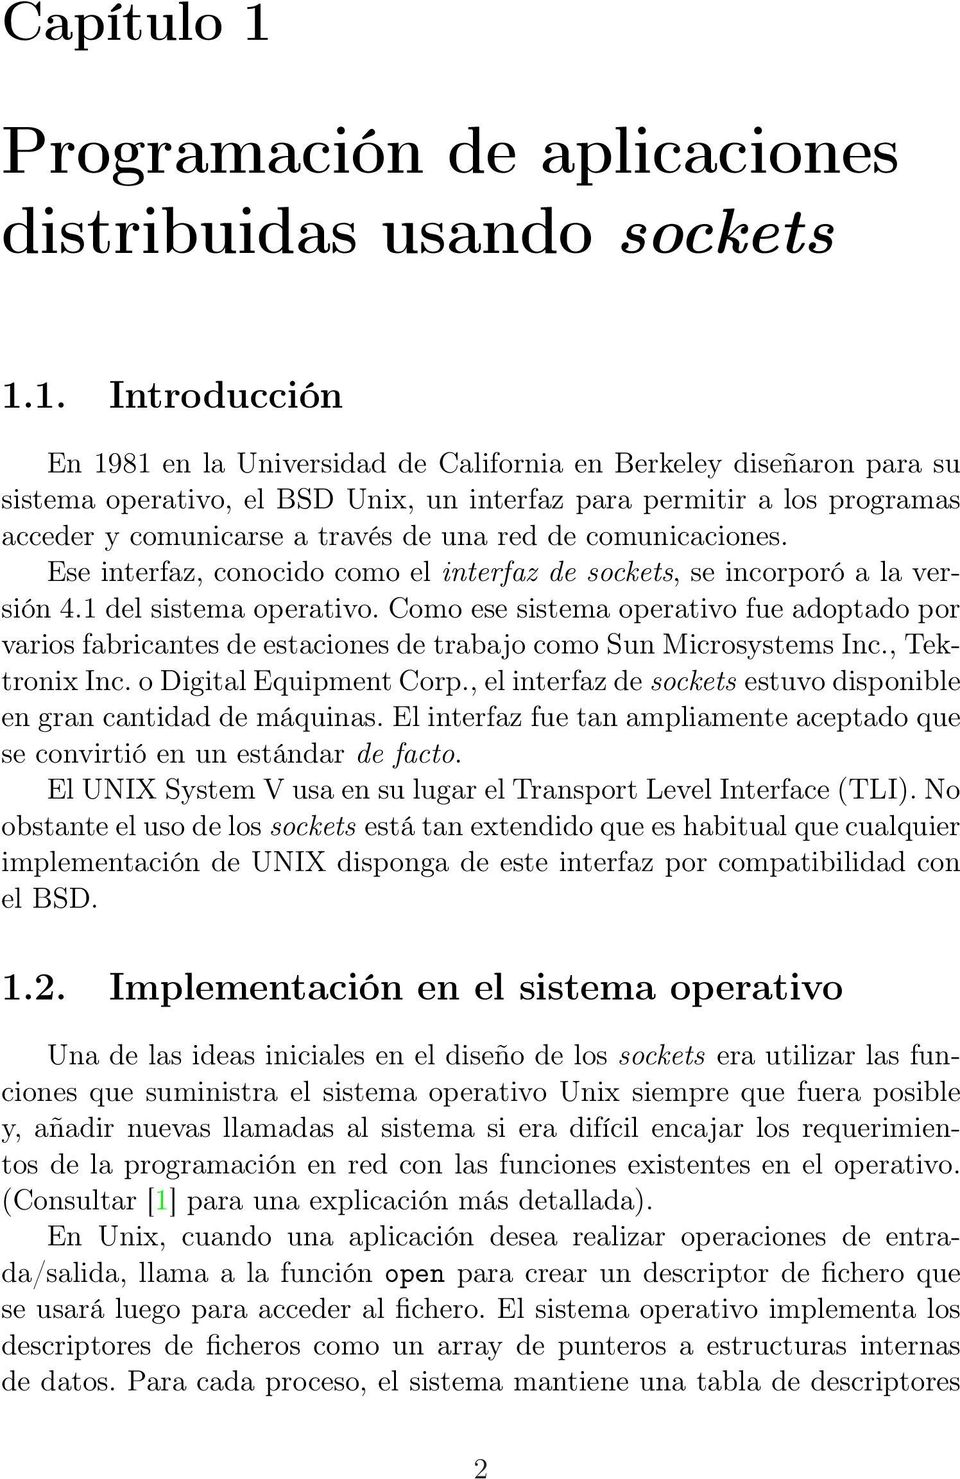 1. Introducción En 1981 en la Universidad de California en Berkeley diseñaron para su sistema operativo, el BSD Unix, un interfaz para permitir a los programas acceder y comunicarse a través de una